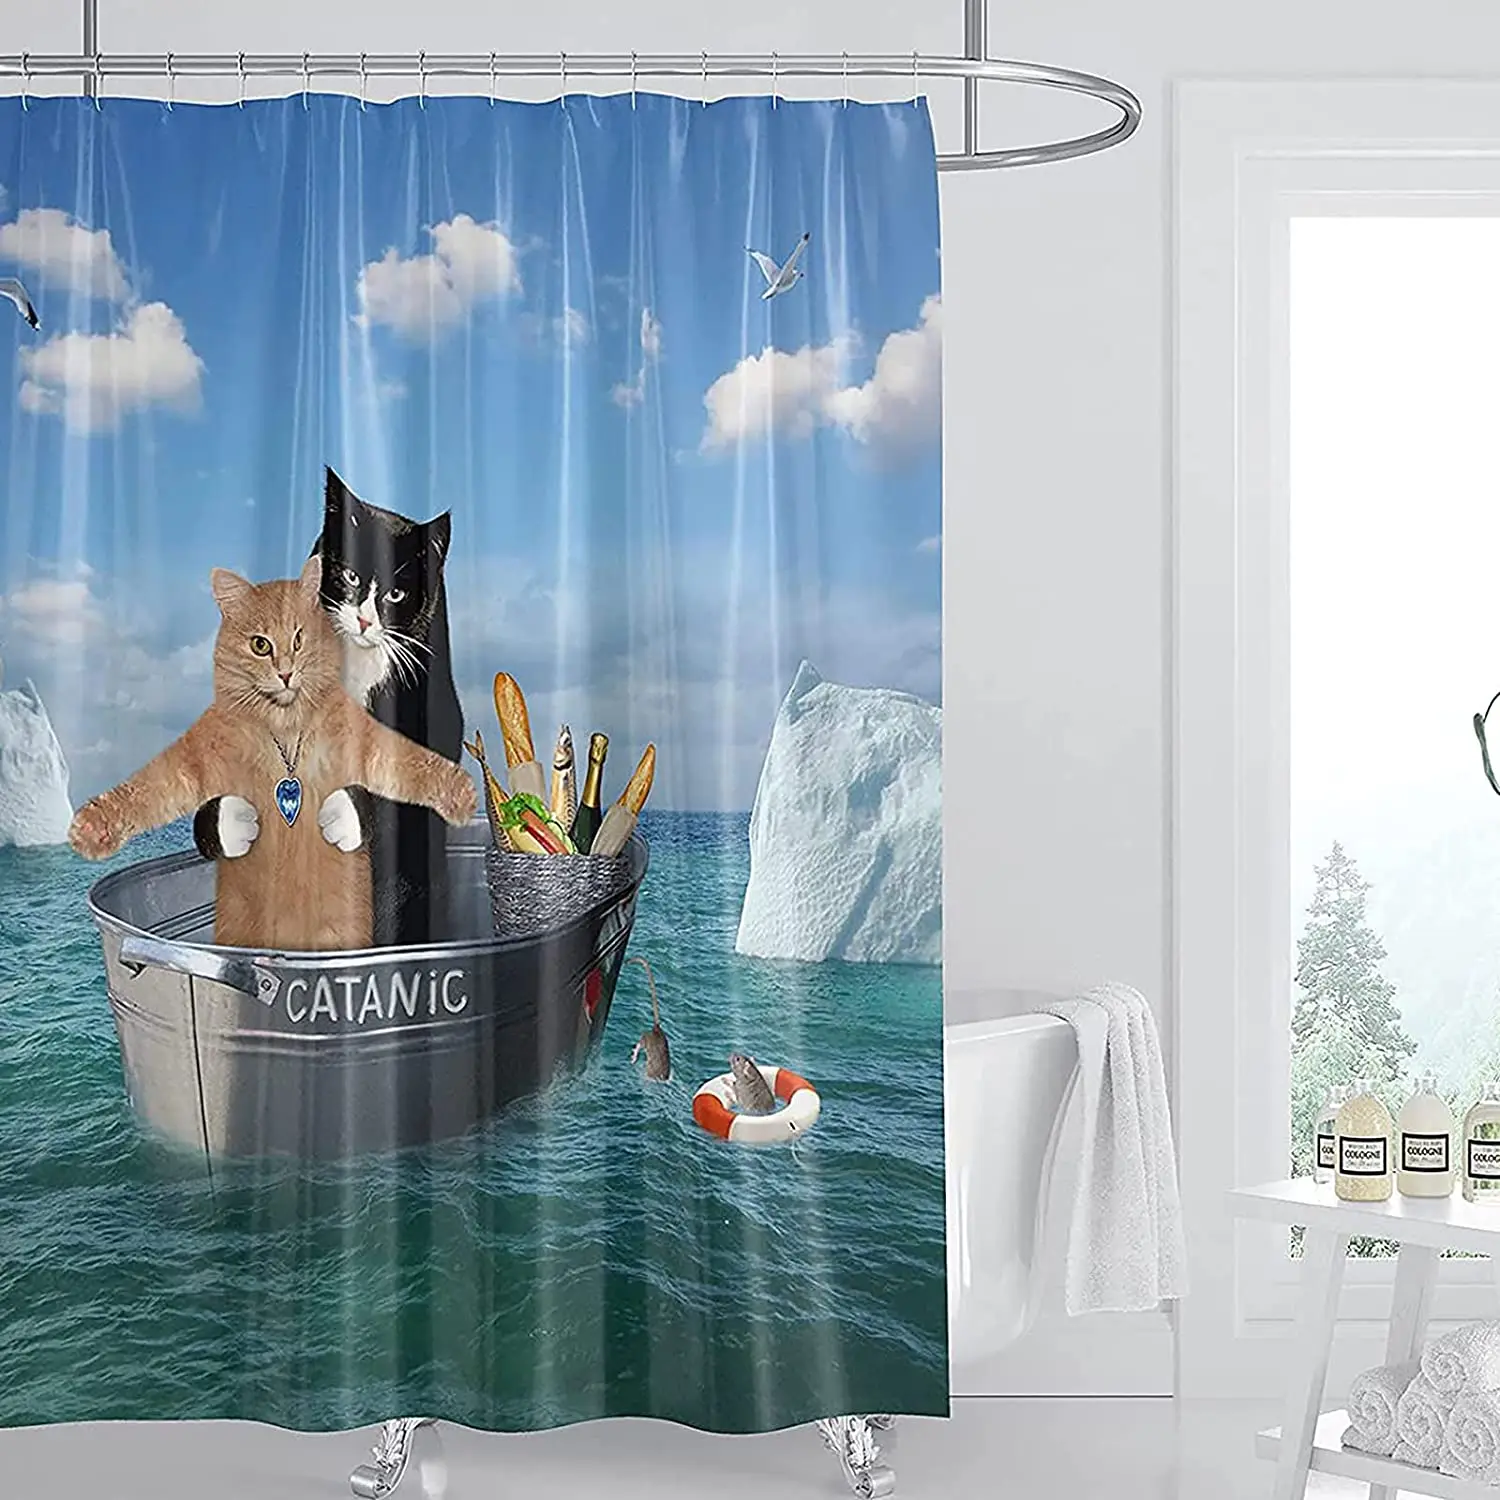 

Занавеска для душа в ванную комнату, забавная шторка из полиэстера, с кошкой, котенком, для косплея в океане, с 12 крючками